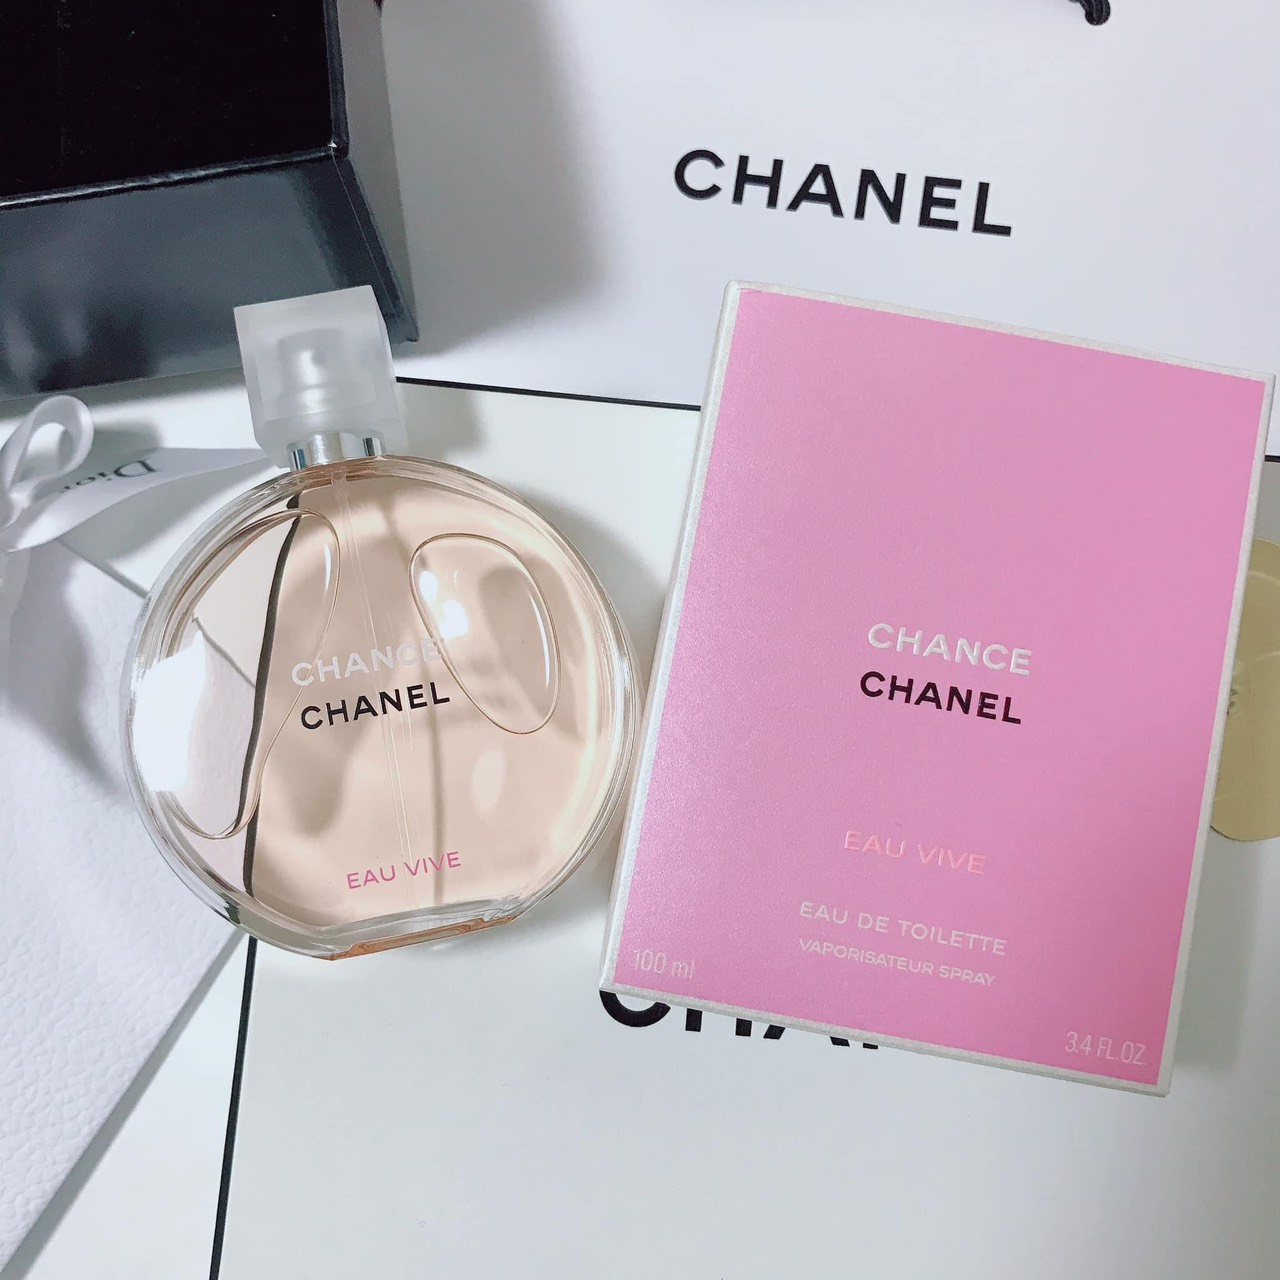 Nước hoa Chanel Chance Eau Vive EDT nâng tầm nữ tính trong sự sang trọng, quyến rũ